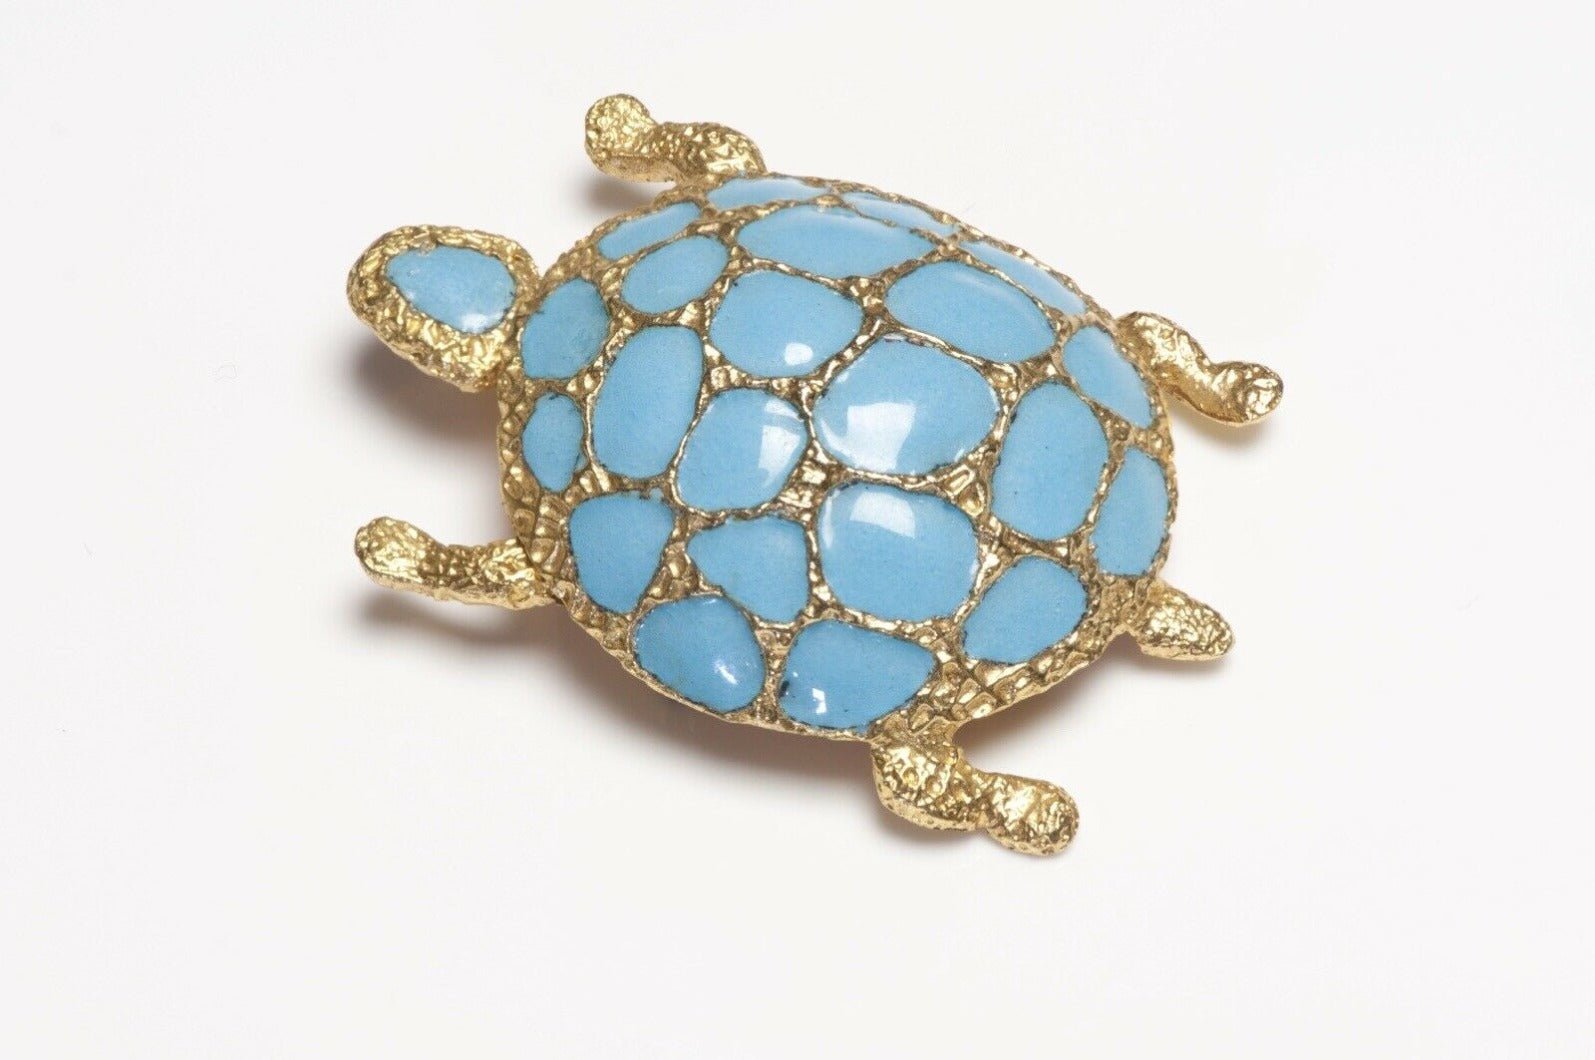 Christian Dior Henkel & Grosse Germany 1967 Blue Enamel Turtle Brooch - DSF Antique Jewelry